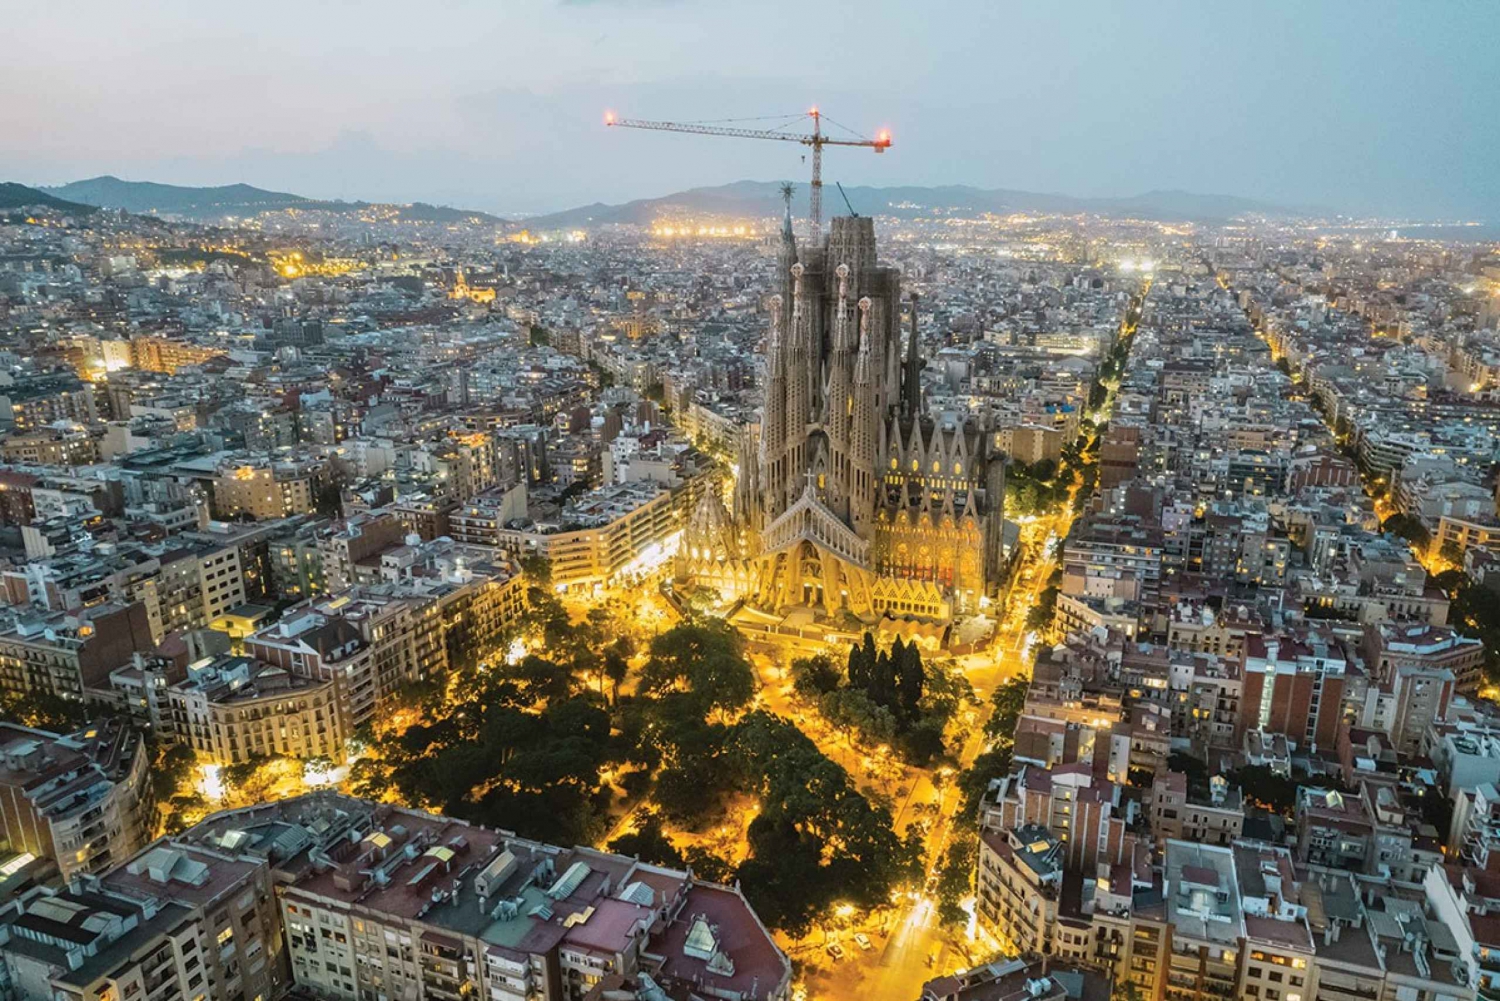 Barcellona: Tour in Segway guidato alla scoperta di Gaudí